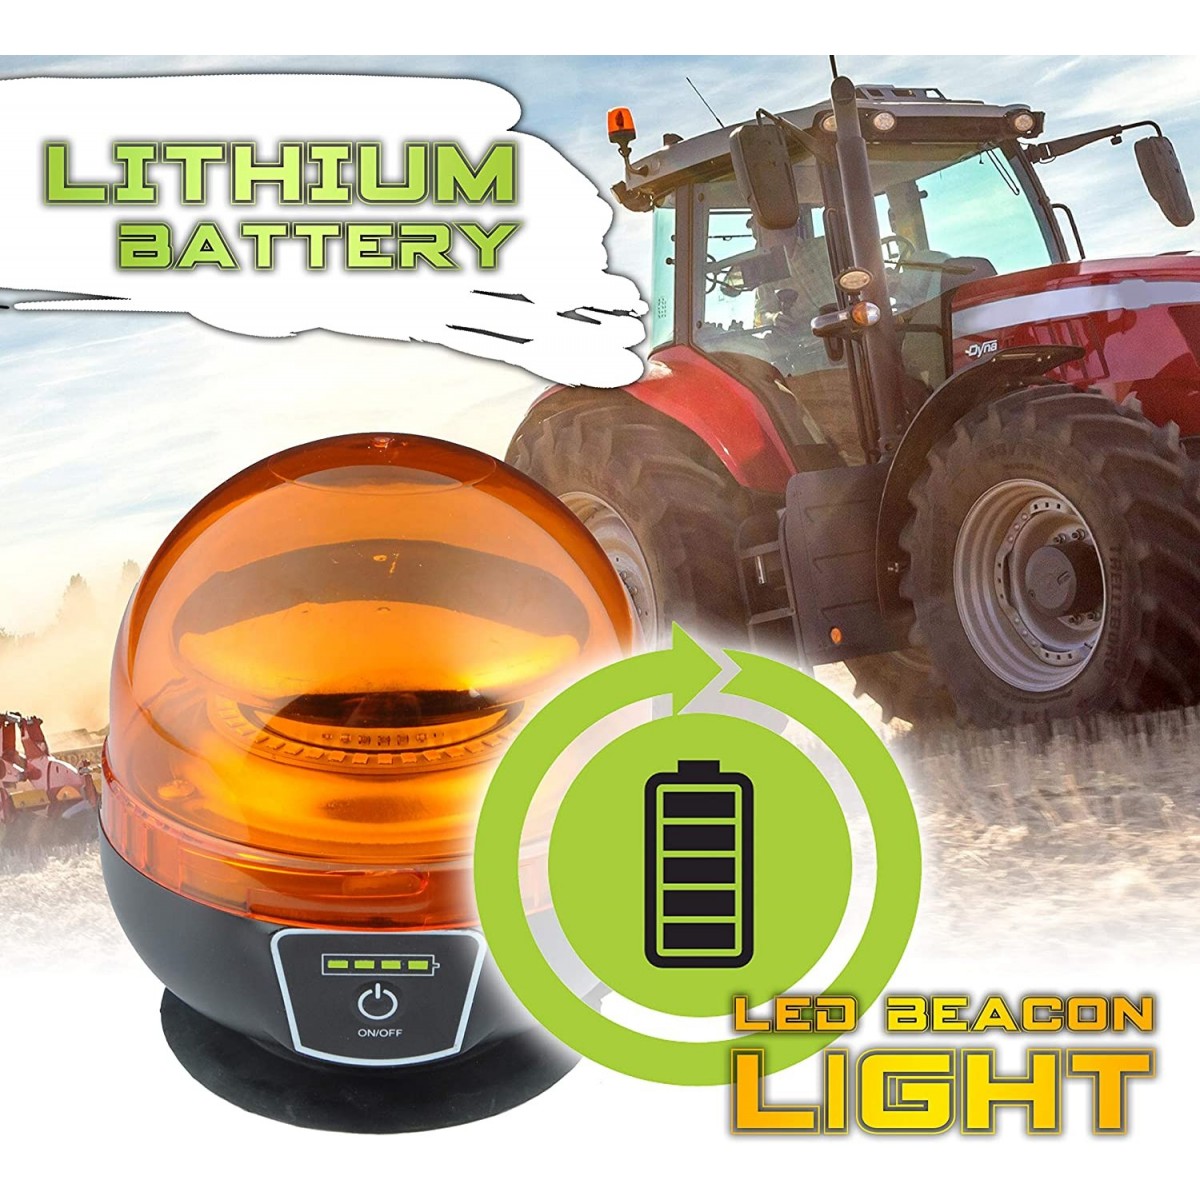 Rotativos LED para 12V y 24V - Comprar rotativo para tractor